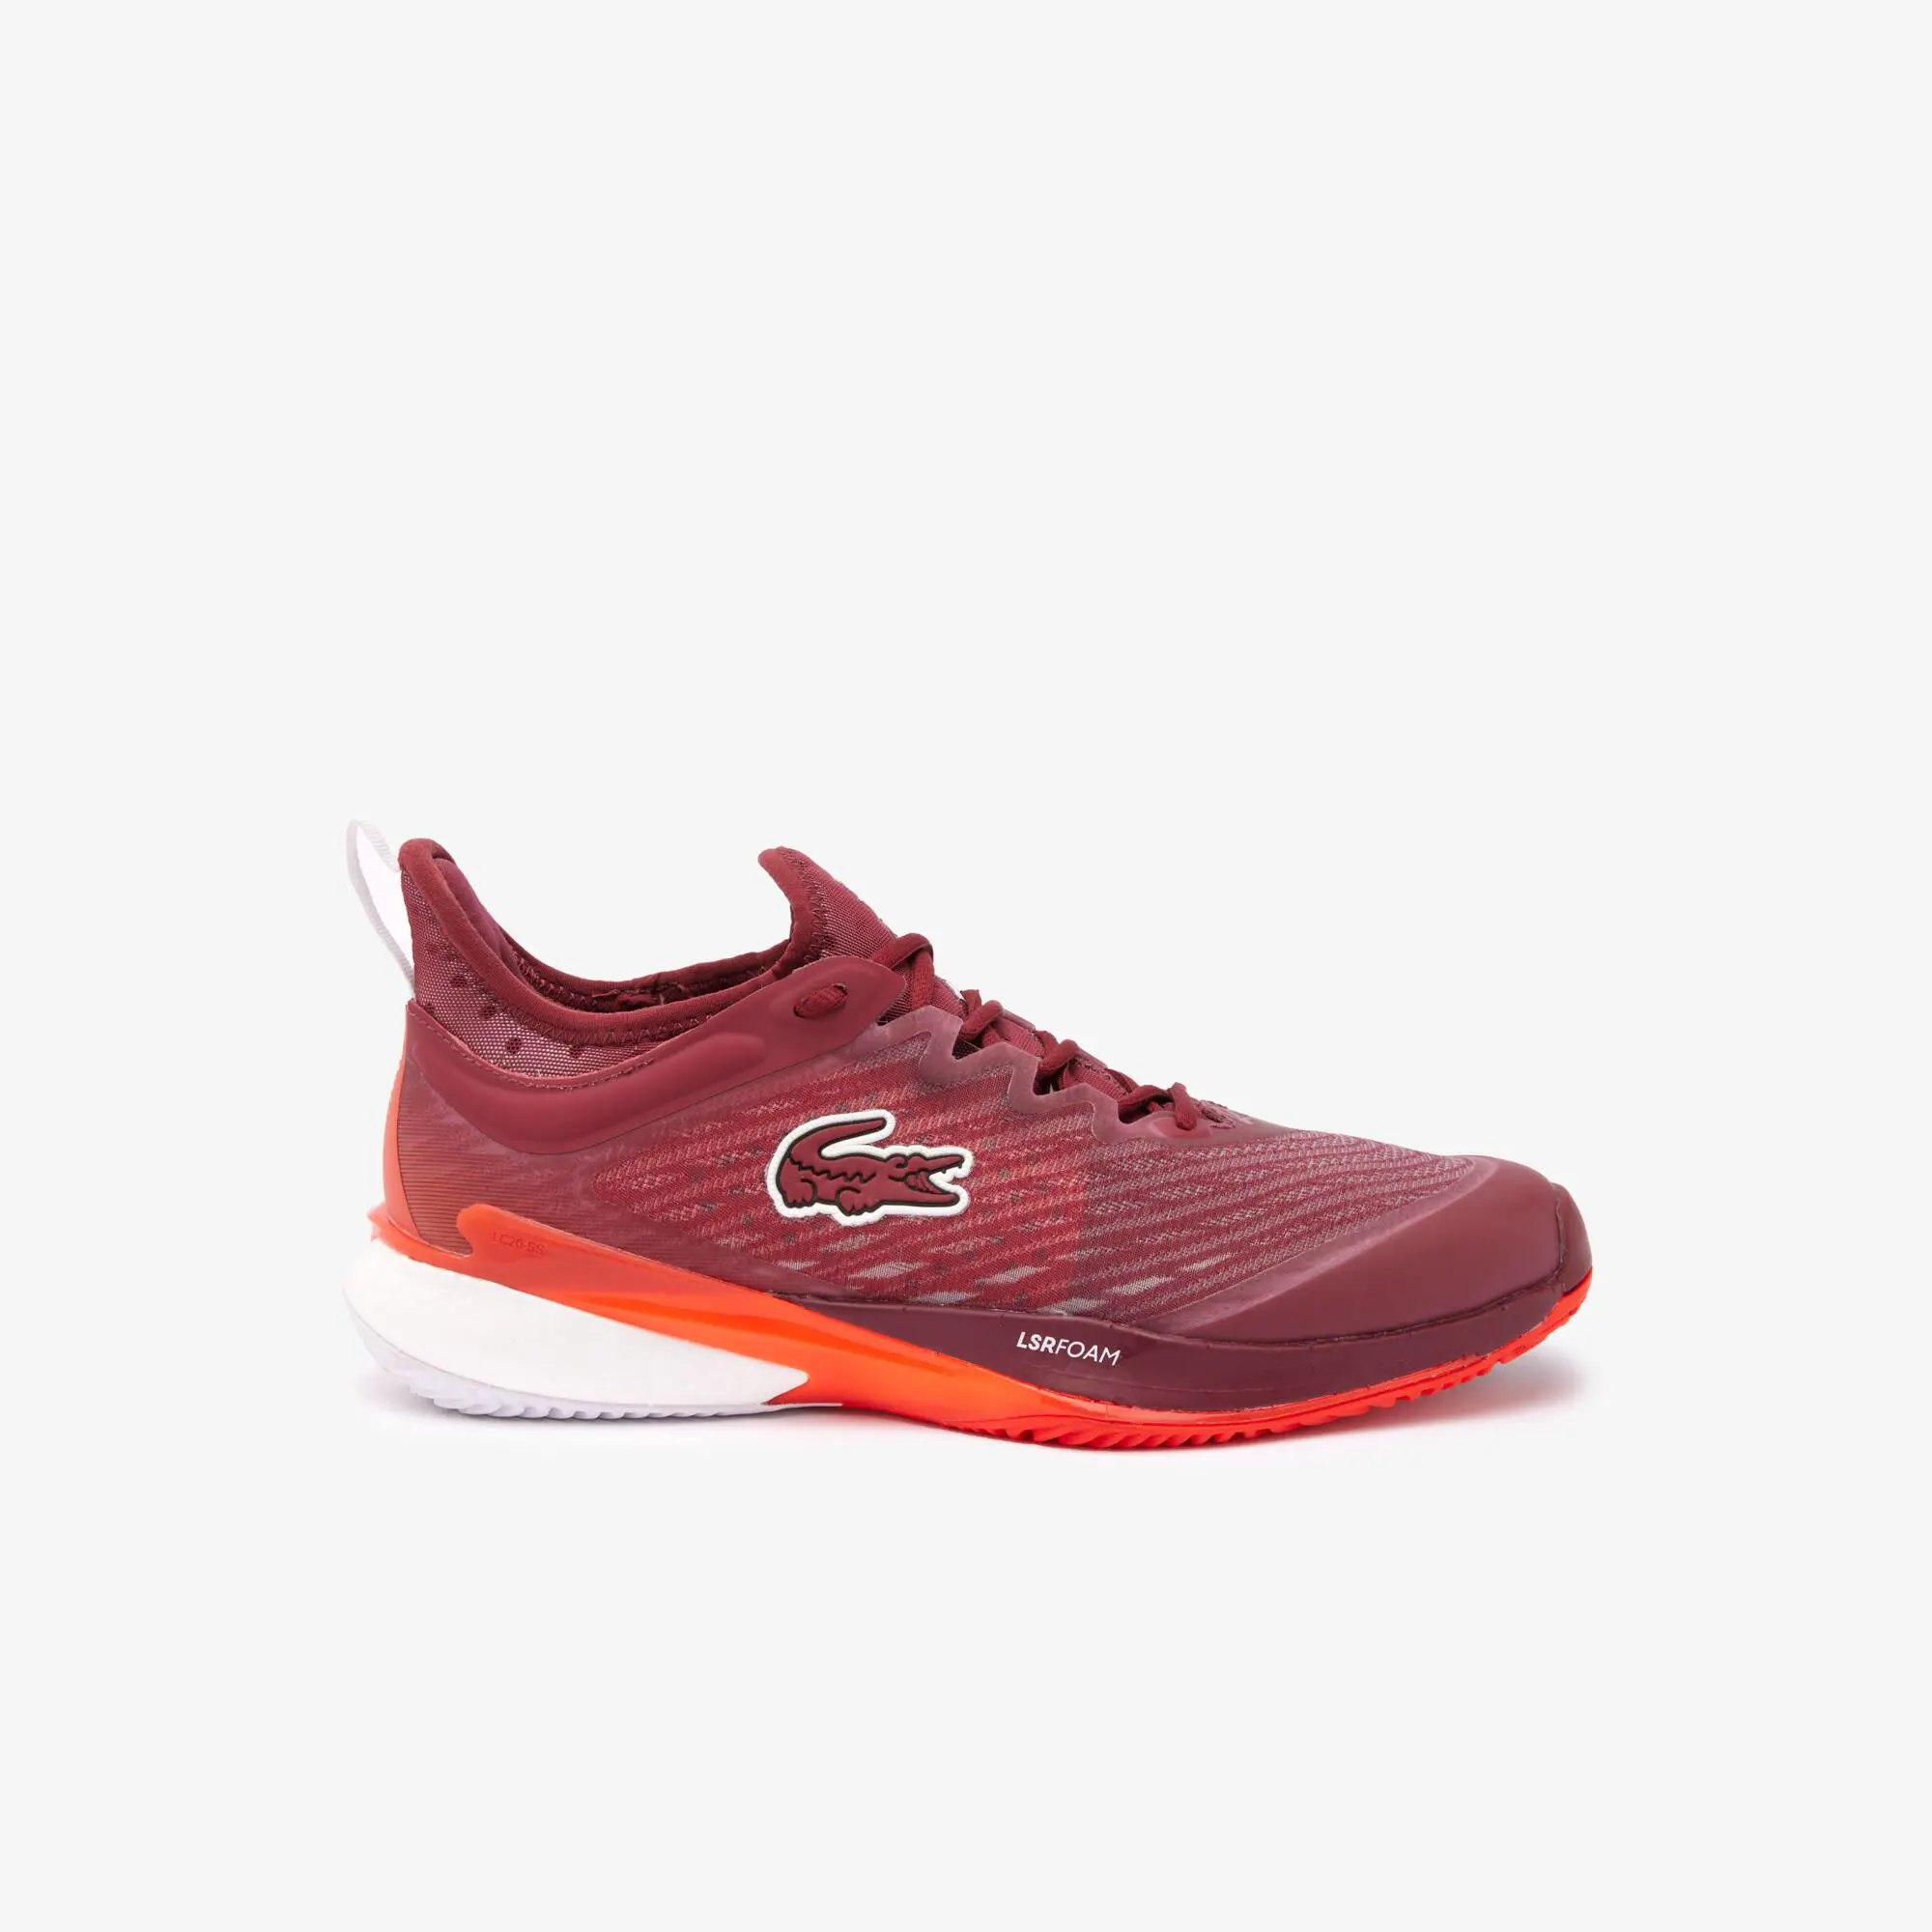 Lacoste Men's AG-LT23 Lite textile tennis shoes. 1